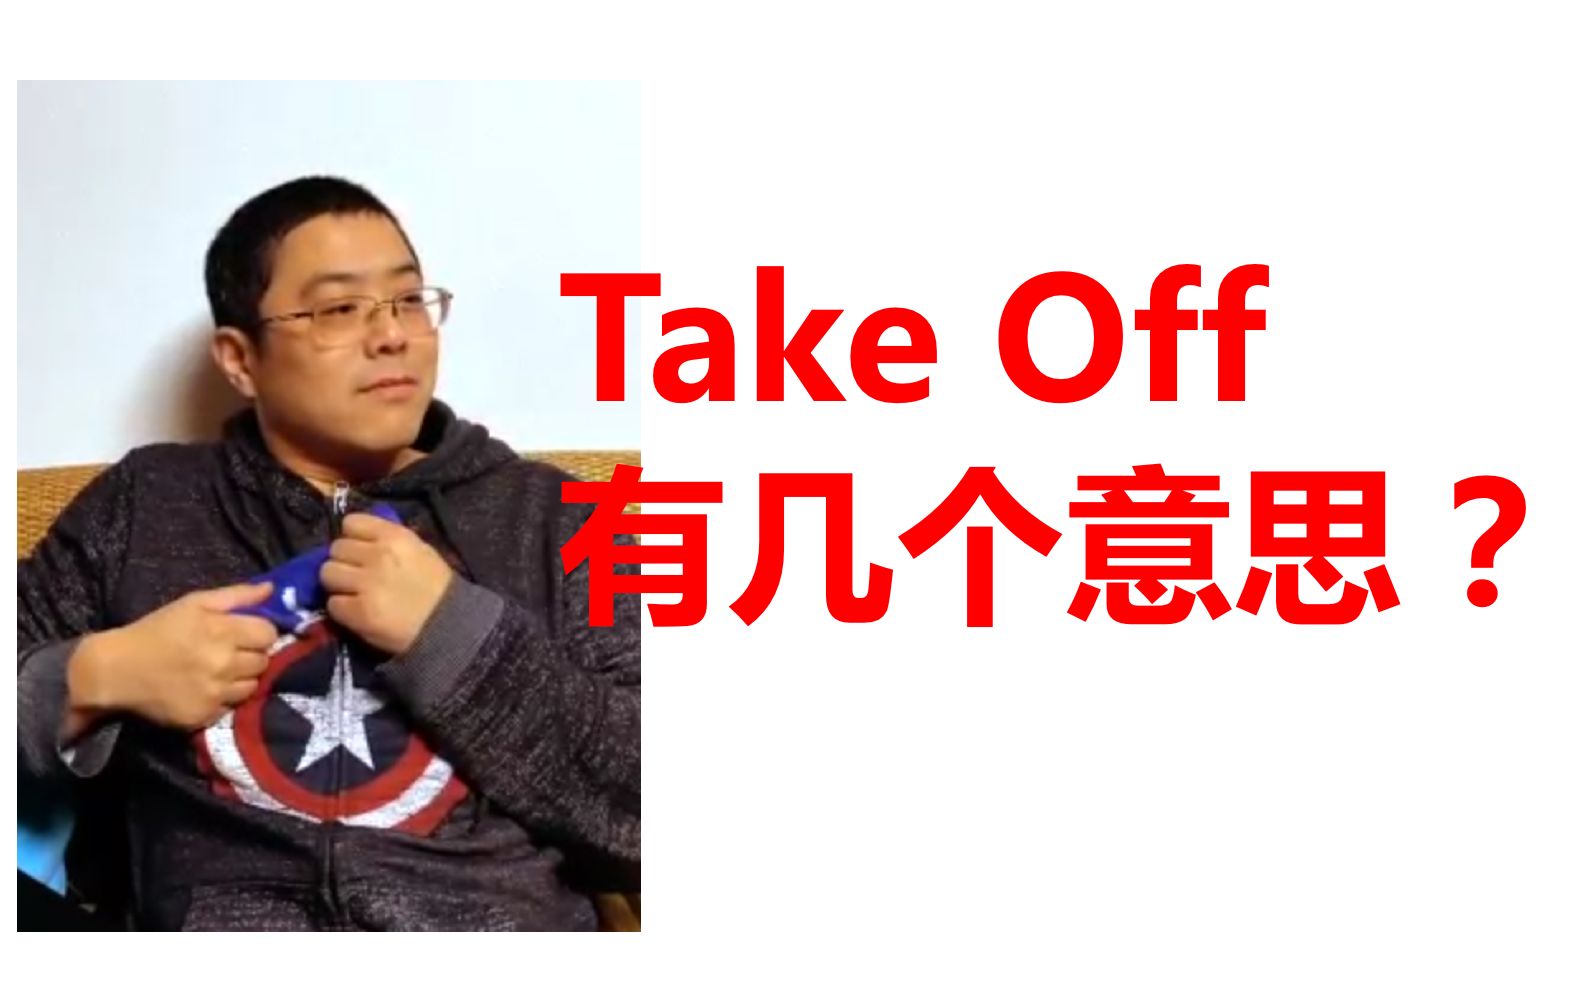 Off 意思 take 「take off」中文意思有三種